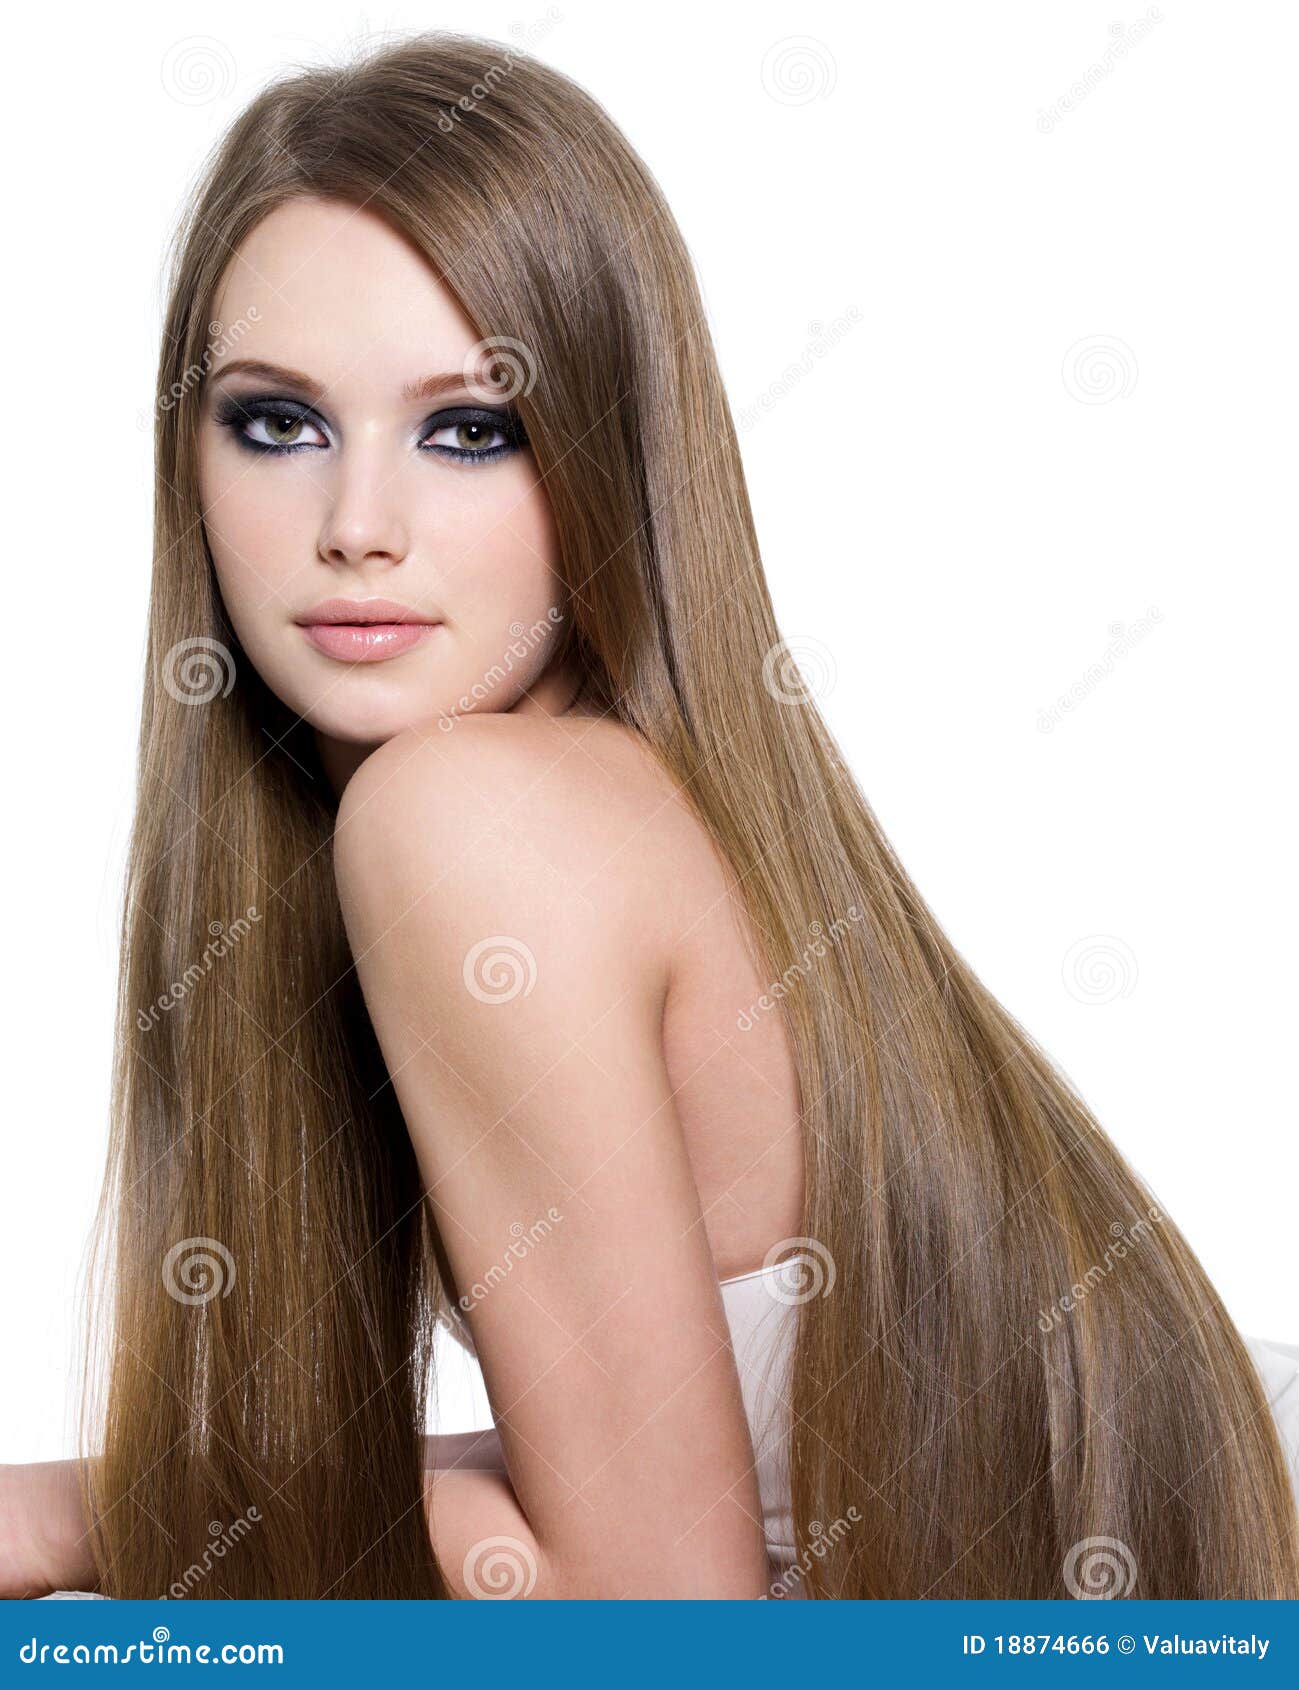 Сексуальные девушки с длинными волосами фото